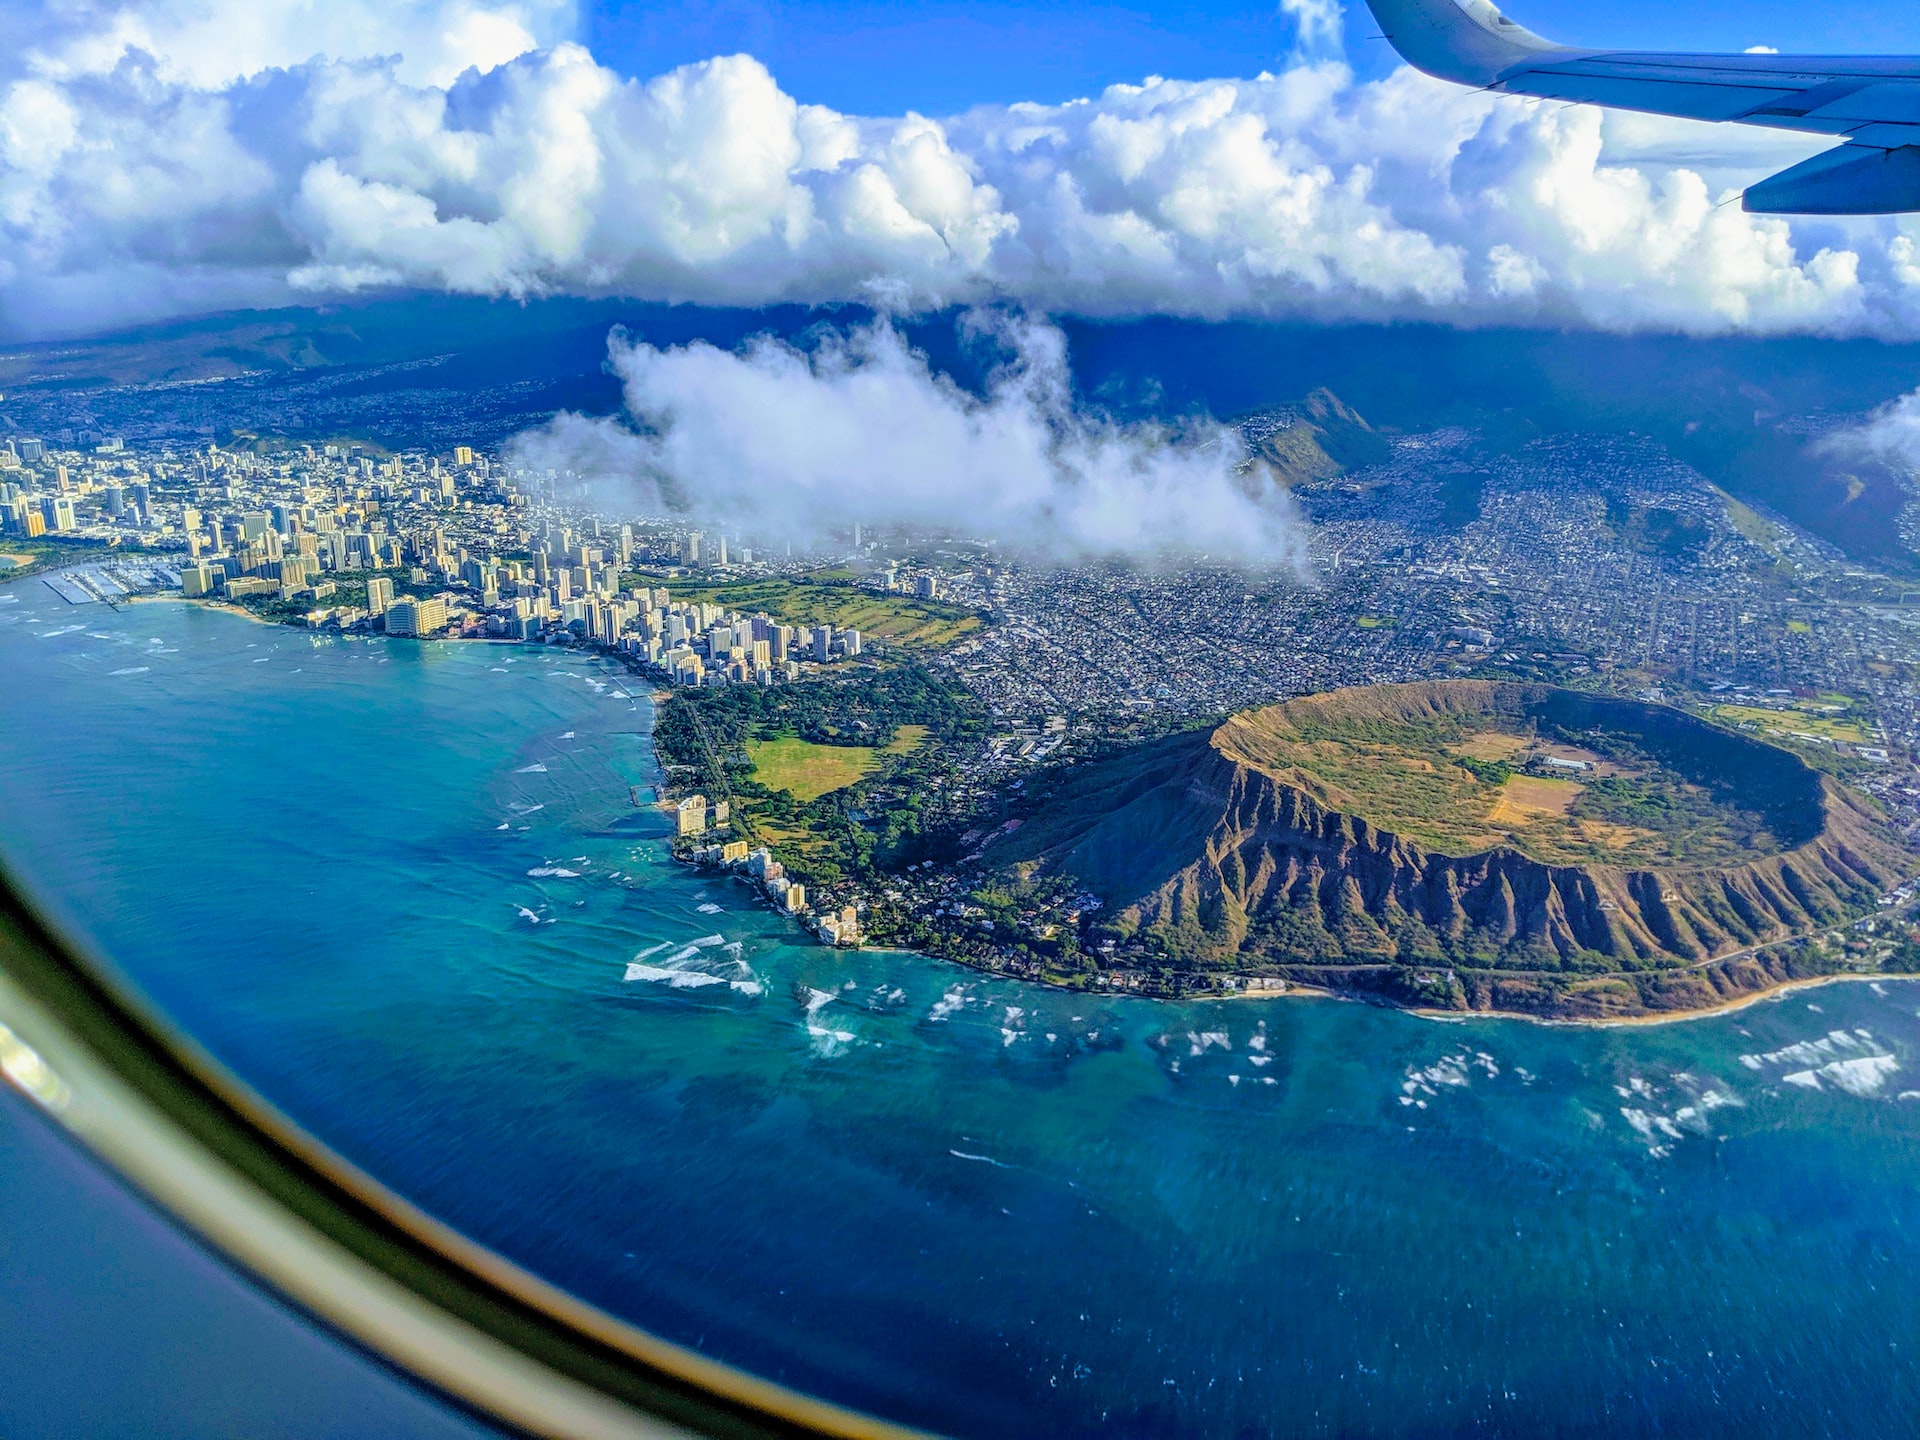 Honolulu as seen from a plane window.